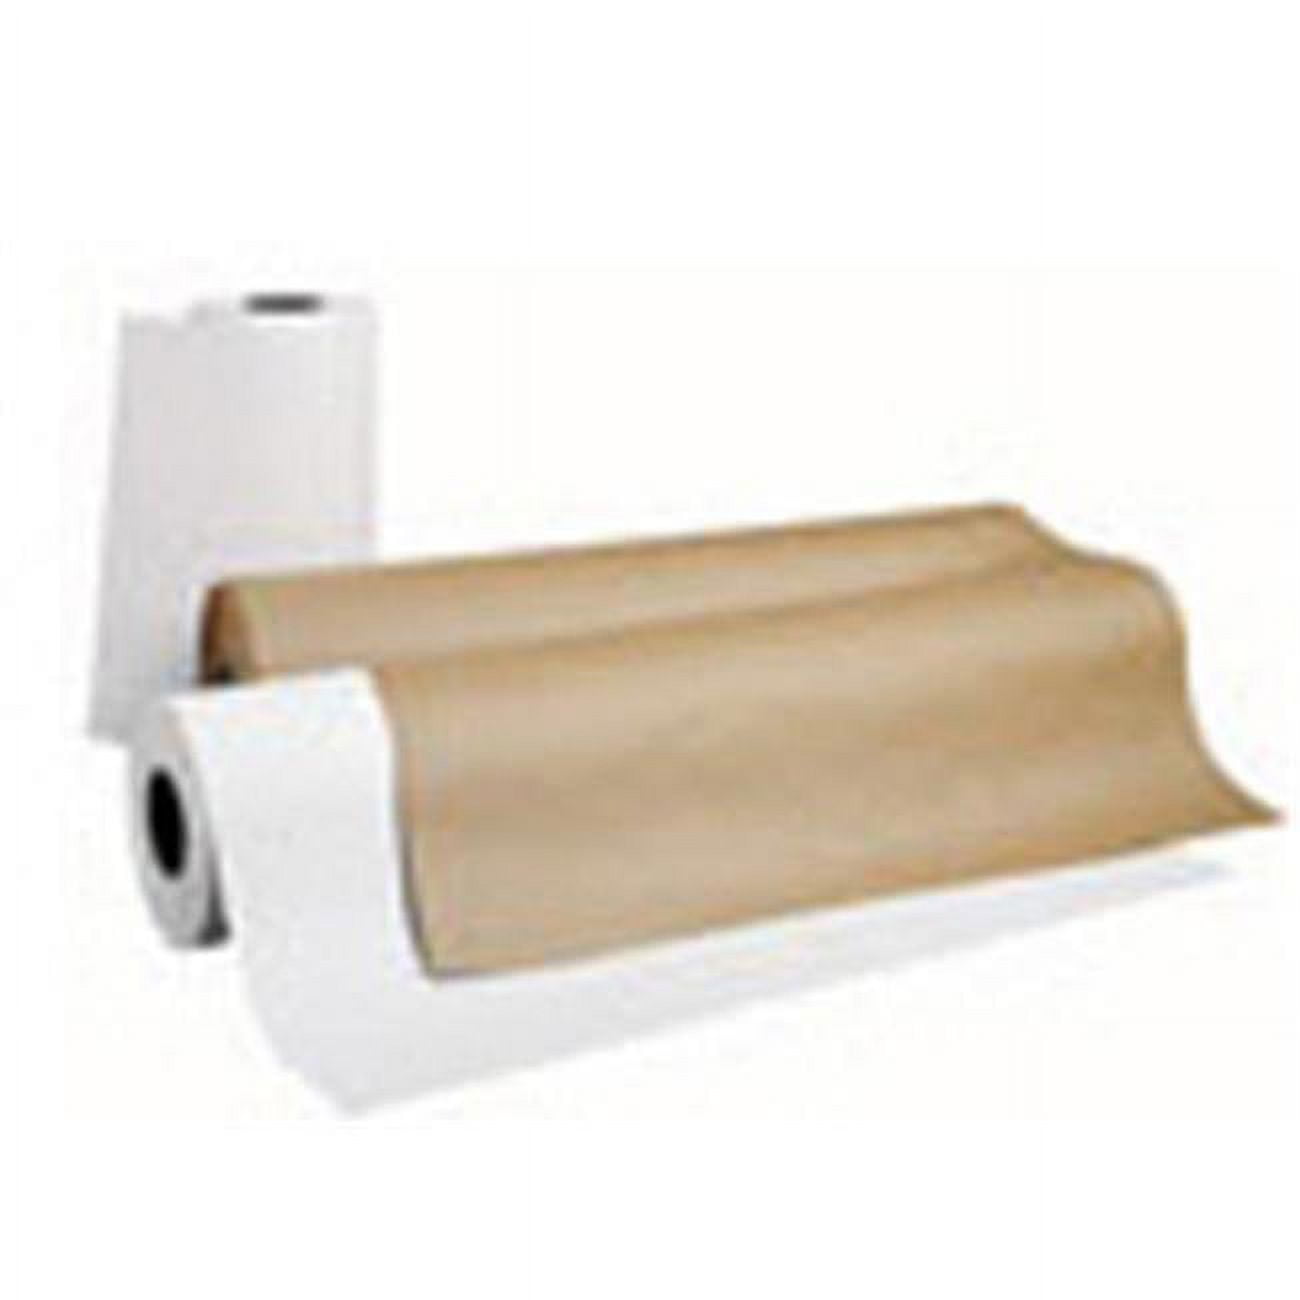  Pacon 5836 Kraft Paper Roll, 50-lb. Natural Kraft, 36